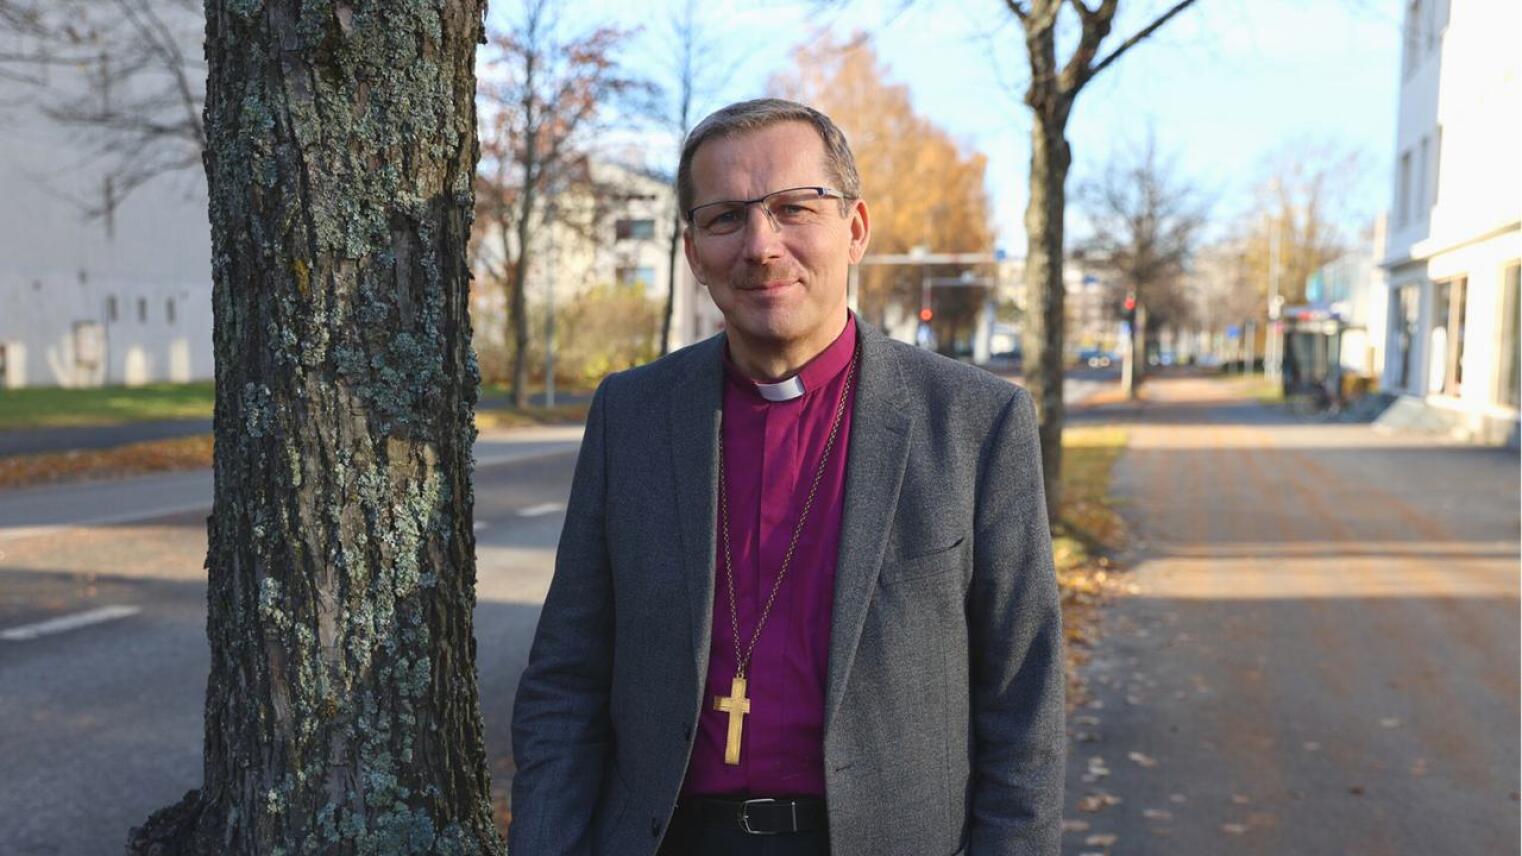 Piispa Jukka Keskitalo sanoo, että vaaleissa on paljon hyviä ehdokkaita.